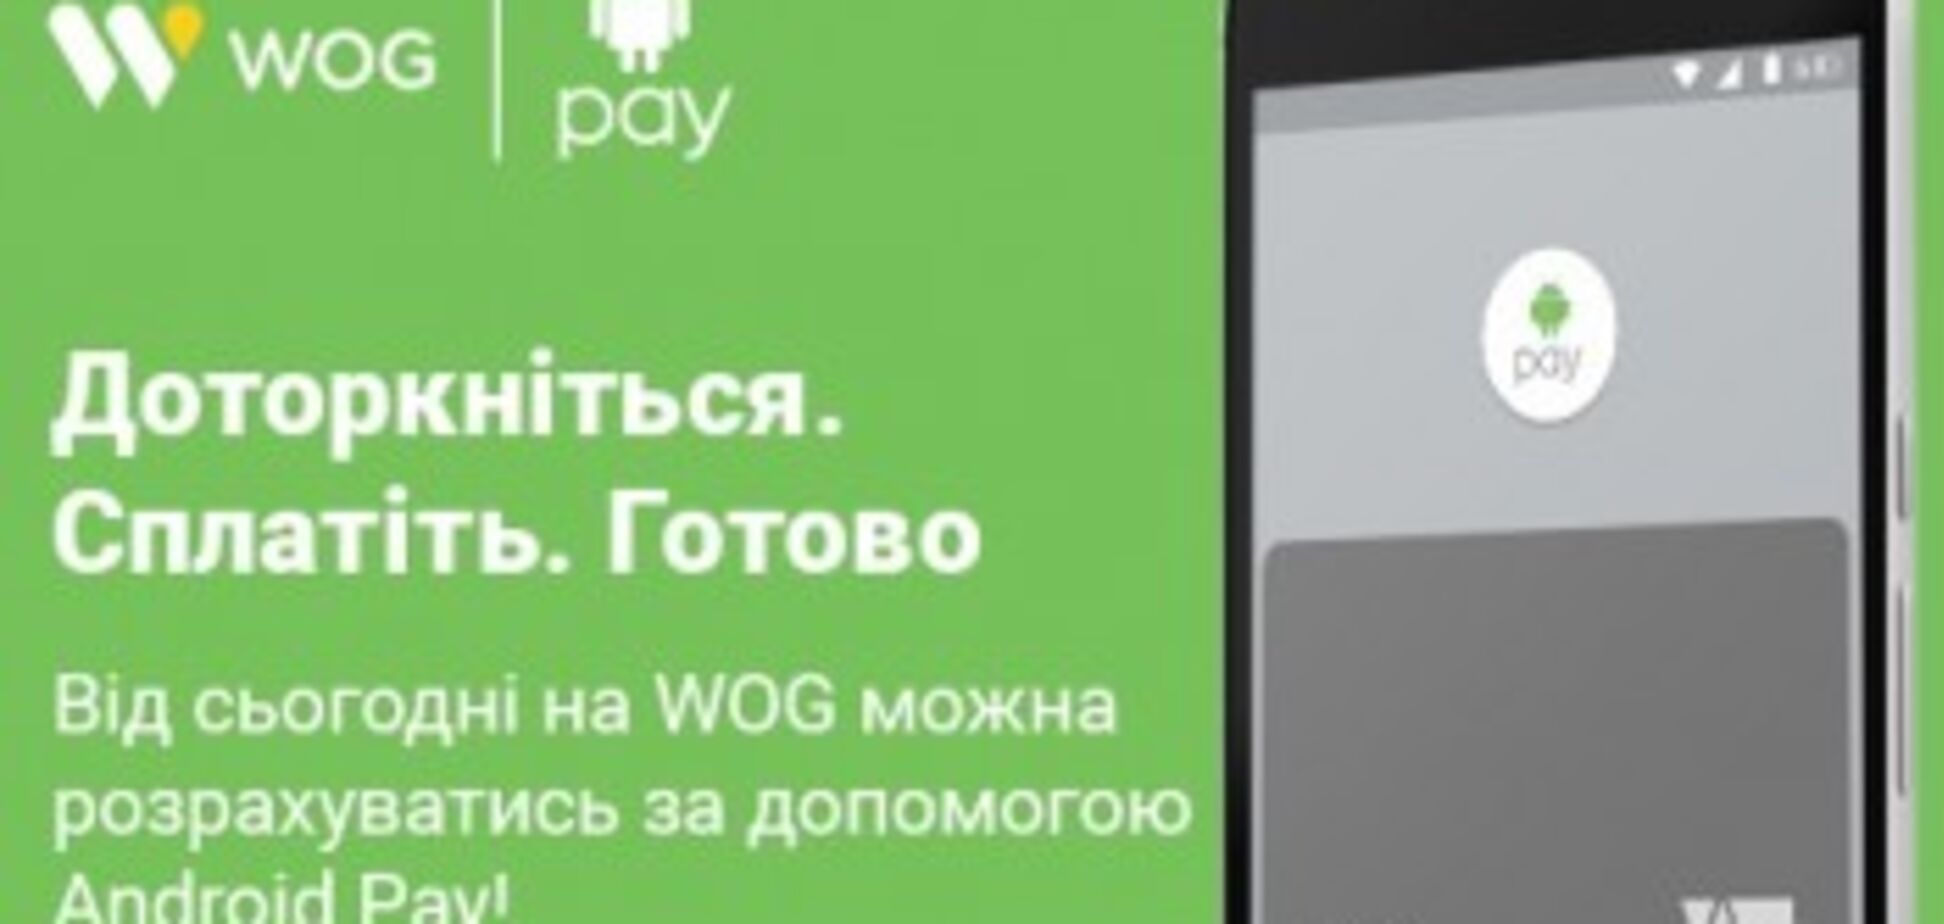 WOG запускает на своих заправках расчет смартфоном с помощью Android Pay